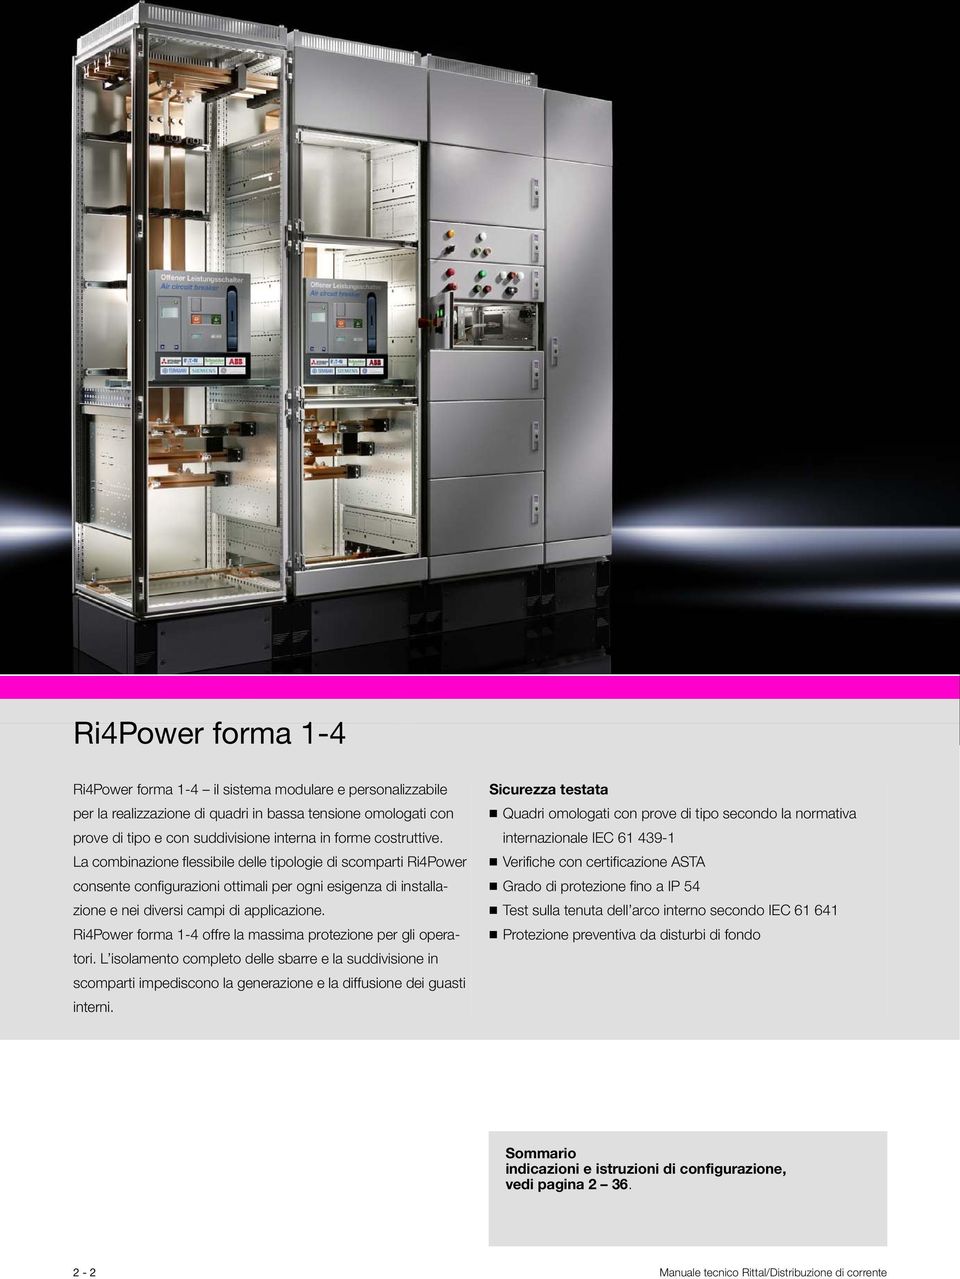 Ri4Power forma 1-4 offre la massima protezione per gli operatori. L isolamento completo delle sbarre e la suddivisione in scomparti impediscono la generazione e la diffusione dei guasti interni.